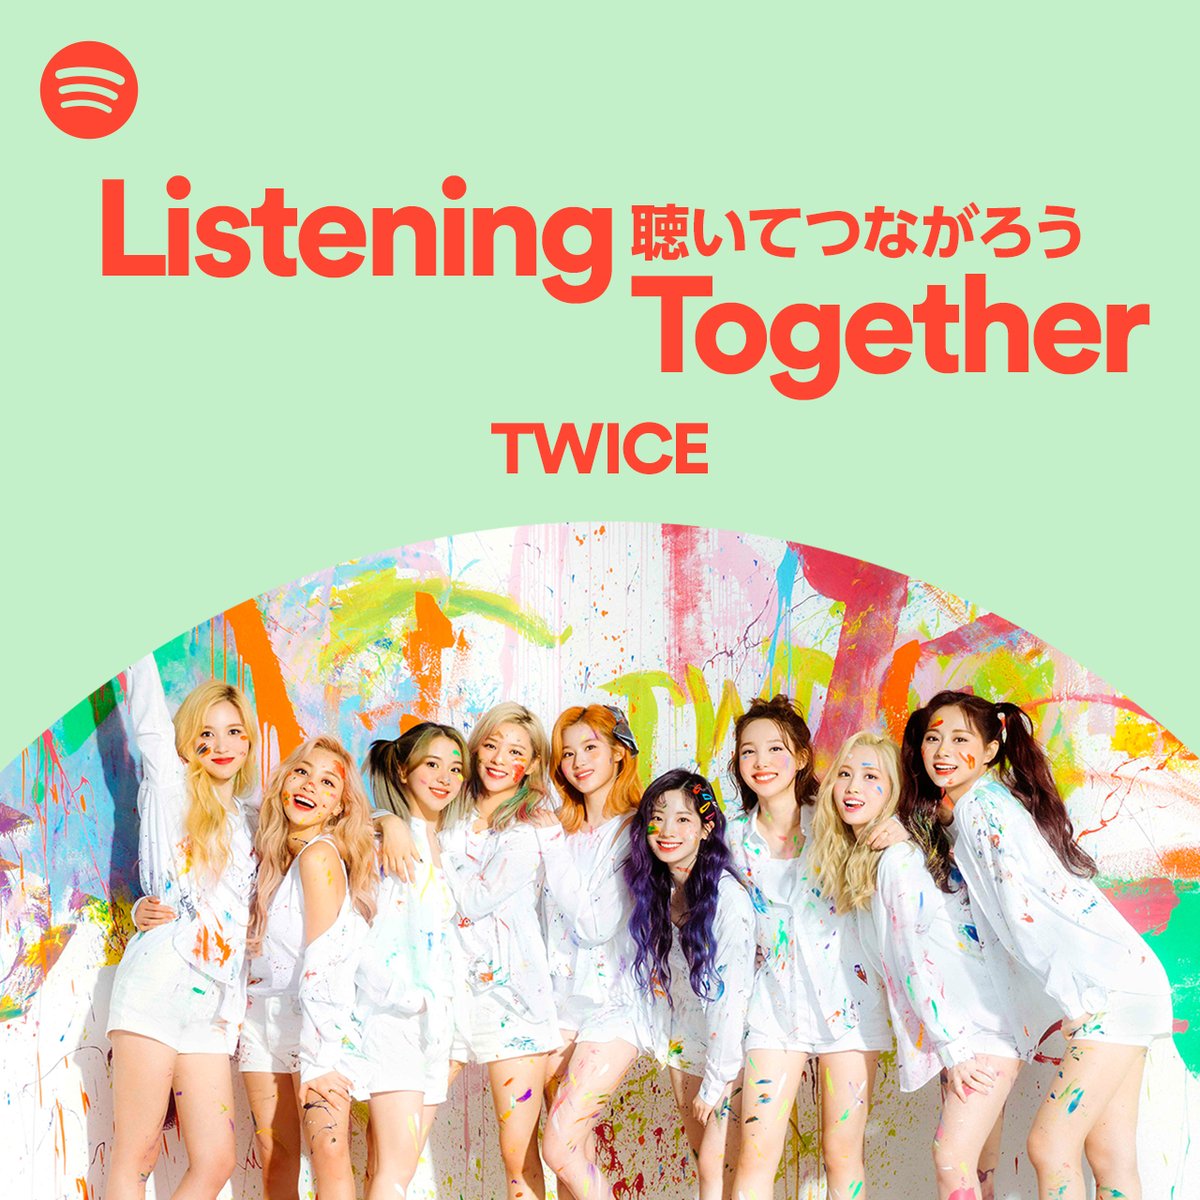 ‗‗‗‗‗‗‗‗‗‗‗‗‗‗‗‗‗‗‗‗

Spotifyで 
'#聴いてつながろう'
‗‗‗‗‗‗‗‗‗‗‗‗‗‗‗‗‗‗‗‗

今、一緒に聴きたい音楽をアーティストが選曲しお届け！

第10弾は #TWICE (@JYPETWICE_JAPAN)🎧💕

メンバーの音声コメント入り!! プレイリストを♡してCHECK👉spoti.fi/ListeningToget…

#聴いつな #ListeningTogether